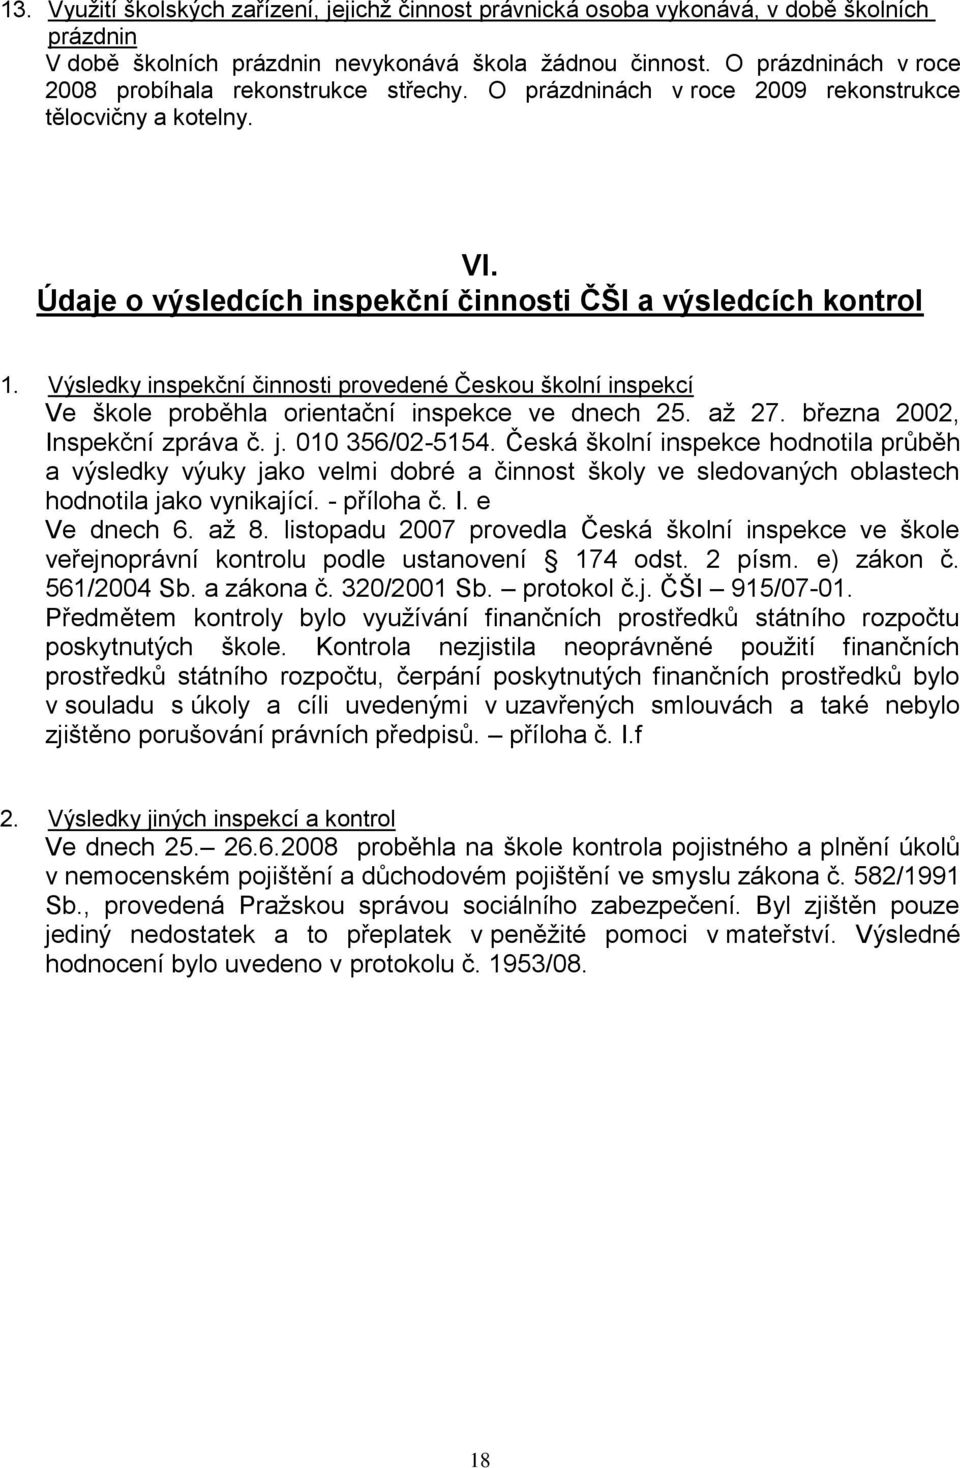 Výsledky inspekční činnosti provedené Českou školní inspekcí Ve škole proběhla orientační inspekce ve dnech 25. aţ 27. března 2002, Inspekční zpráva č. j. 00 356/02-554.